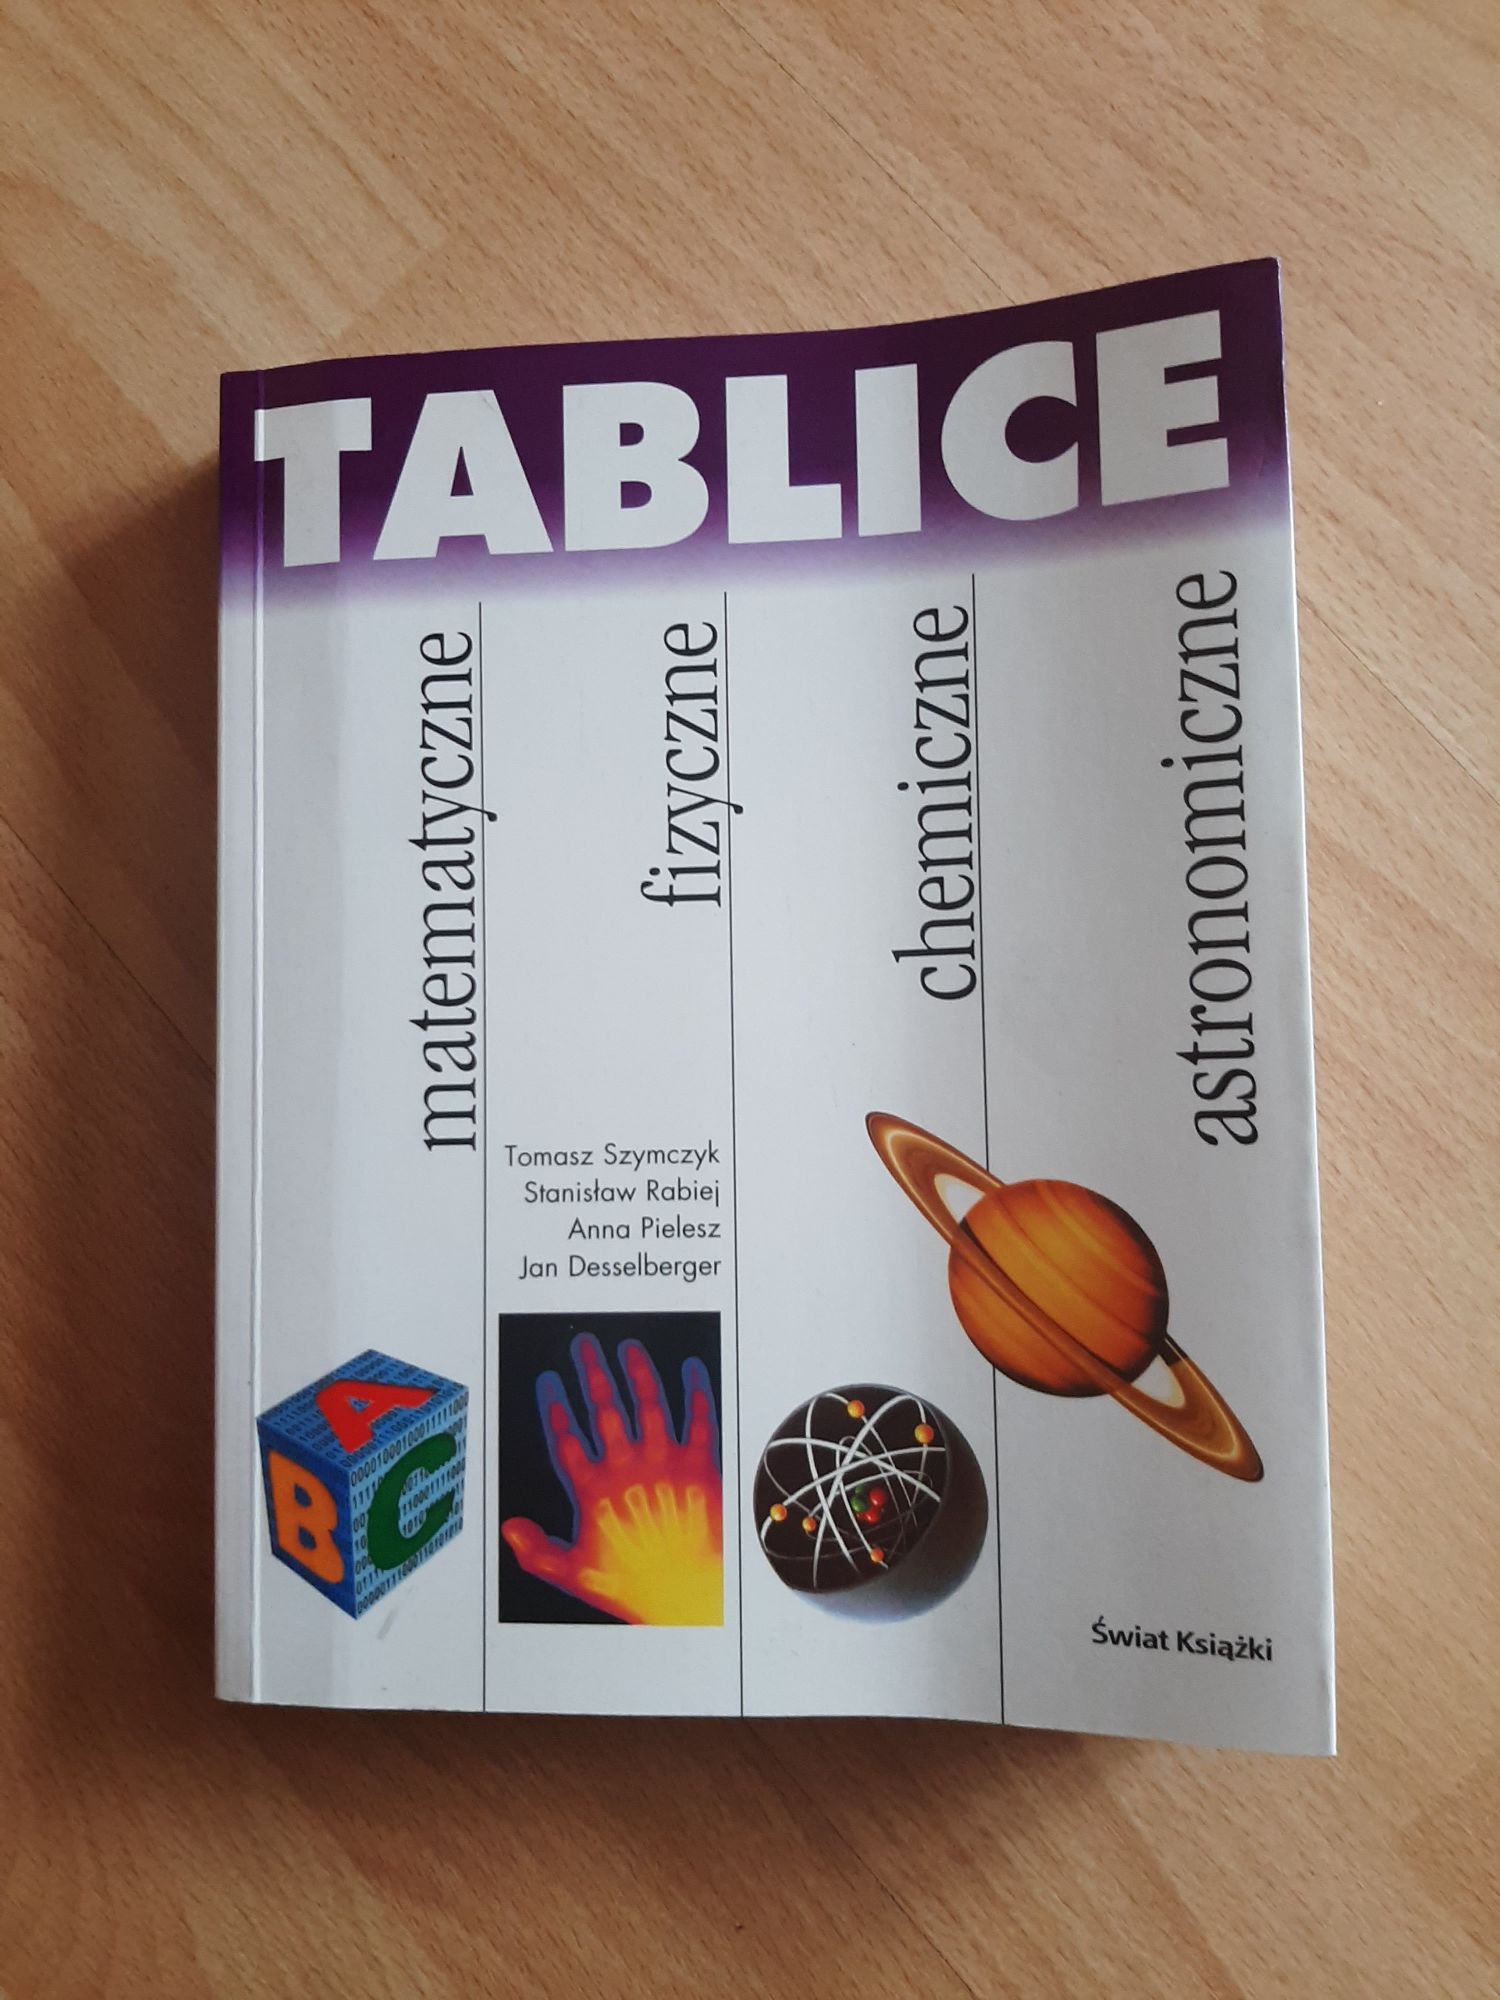 Książka "Tablice matematyczne, fizyczne, chemiczne, astronomiczne"